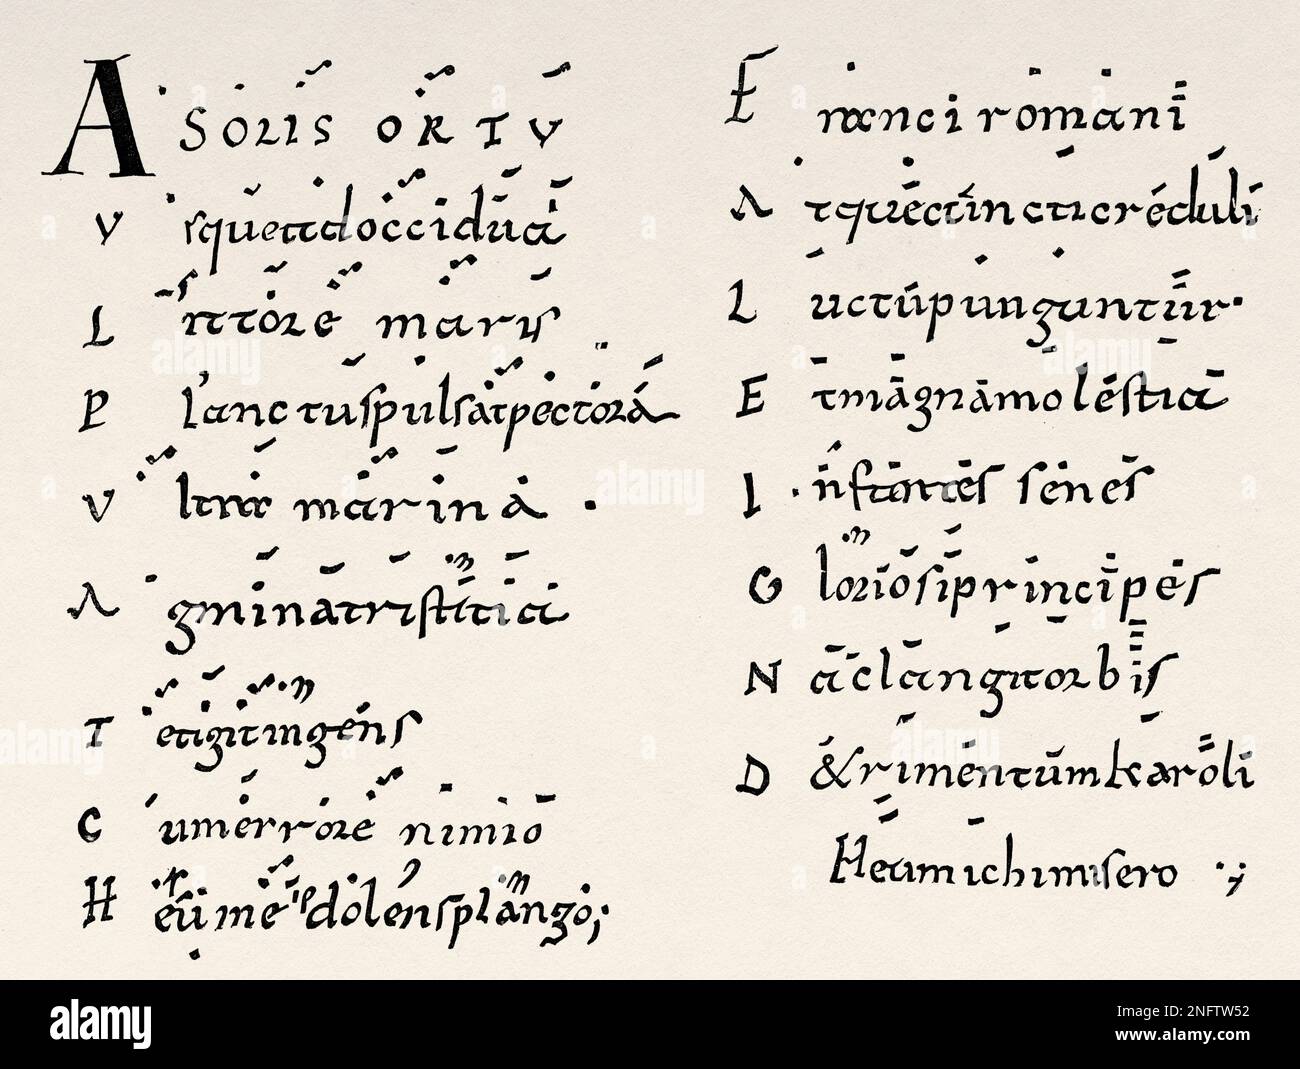 Lamento escrito sobre la muerte de Carlomagno en 814 usando notación de  Neumes de los siglos 7th a 11th, atribuido al abad Colombán de Saint-Trond.  Las artes de la Edad Media y